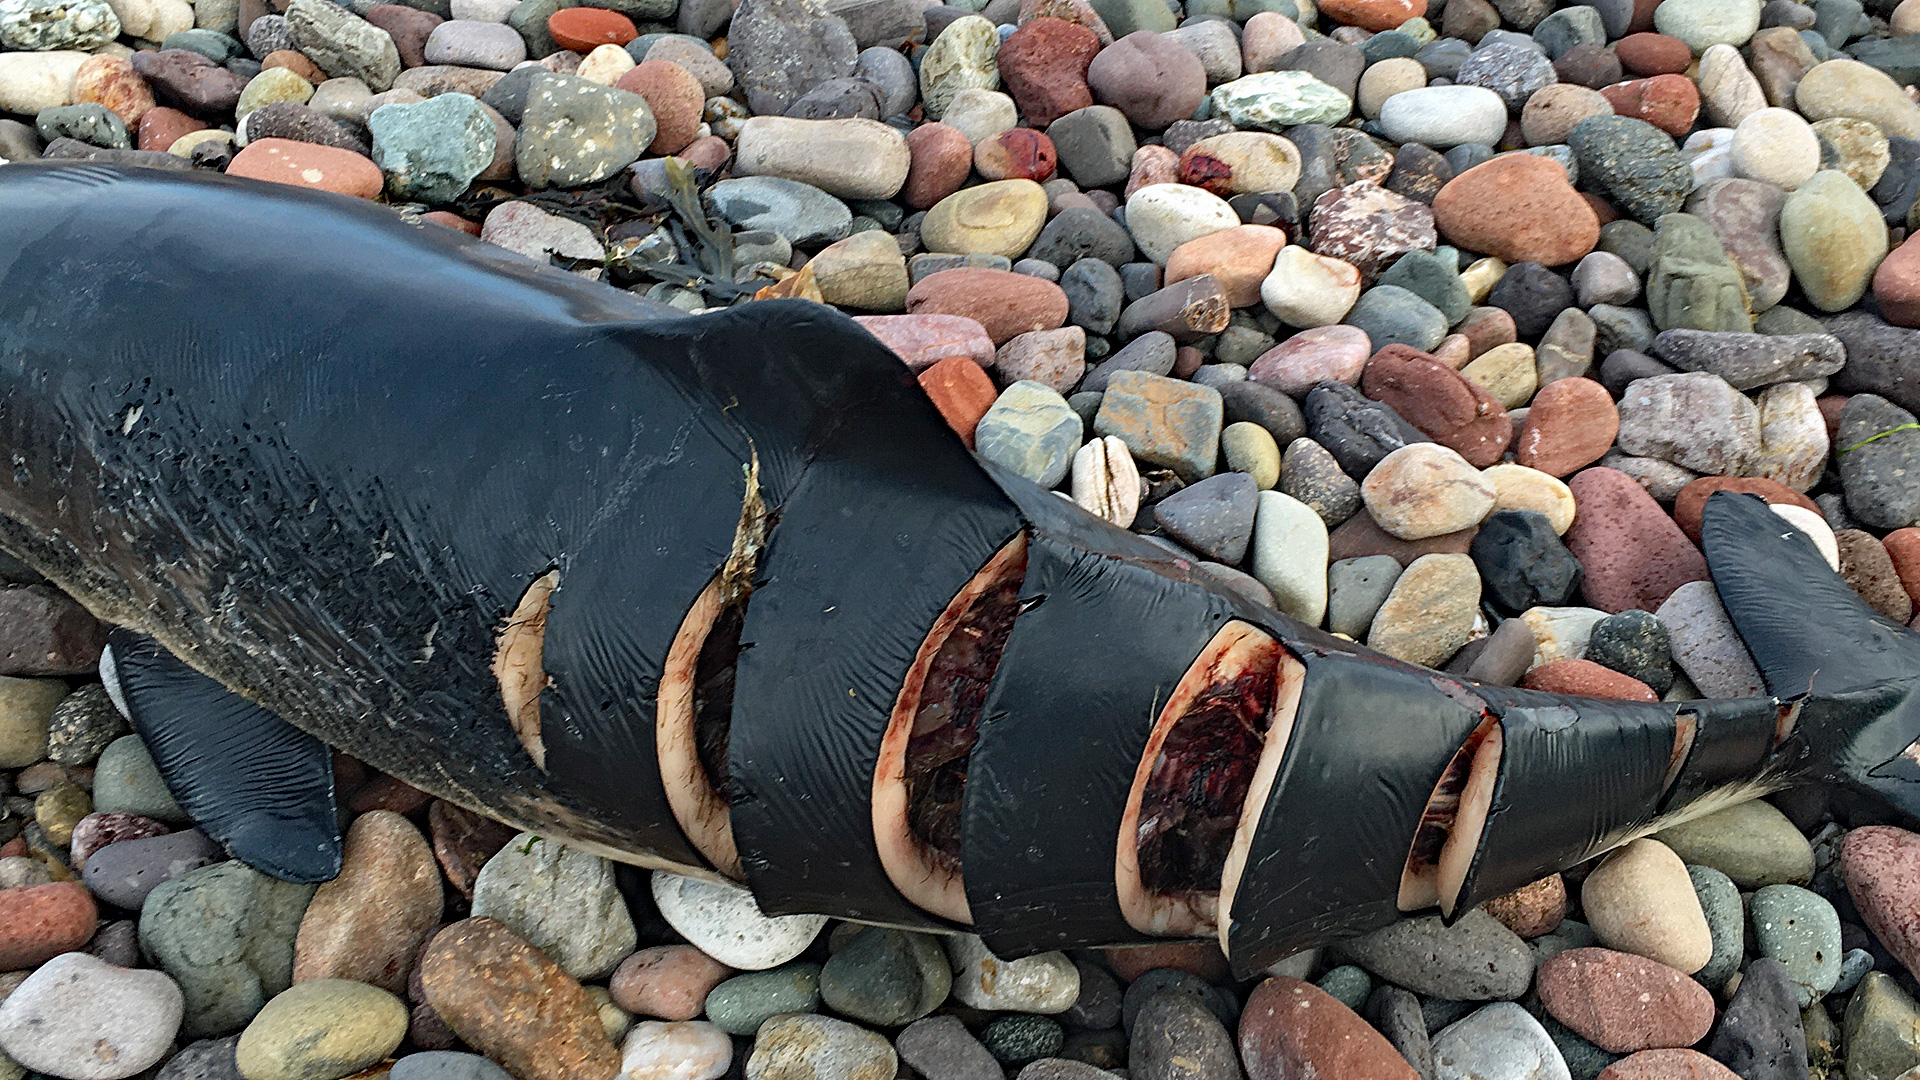 Opfer eines Speedboots? Schweinswal mit tödlichen Schraubenverletzungen.